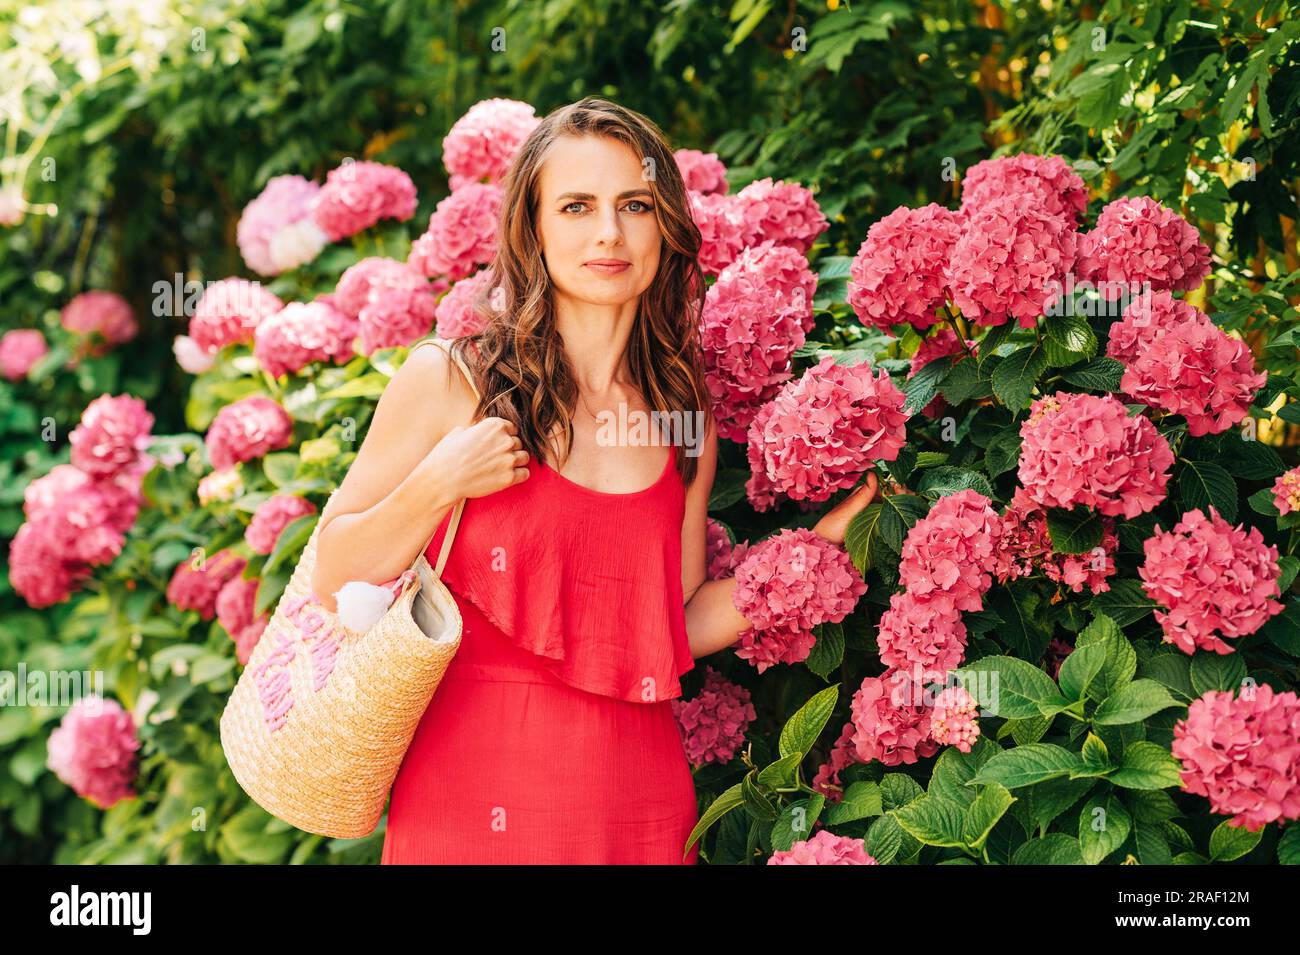 Ritratto all'aperto di una bella donna in posa con fiori di ortensia rosa, indossando un vestito rosso Foto Stock